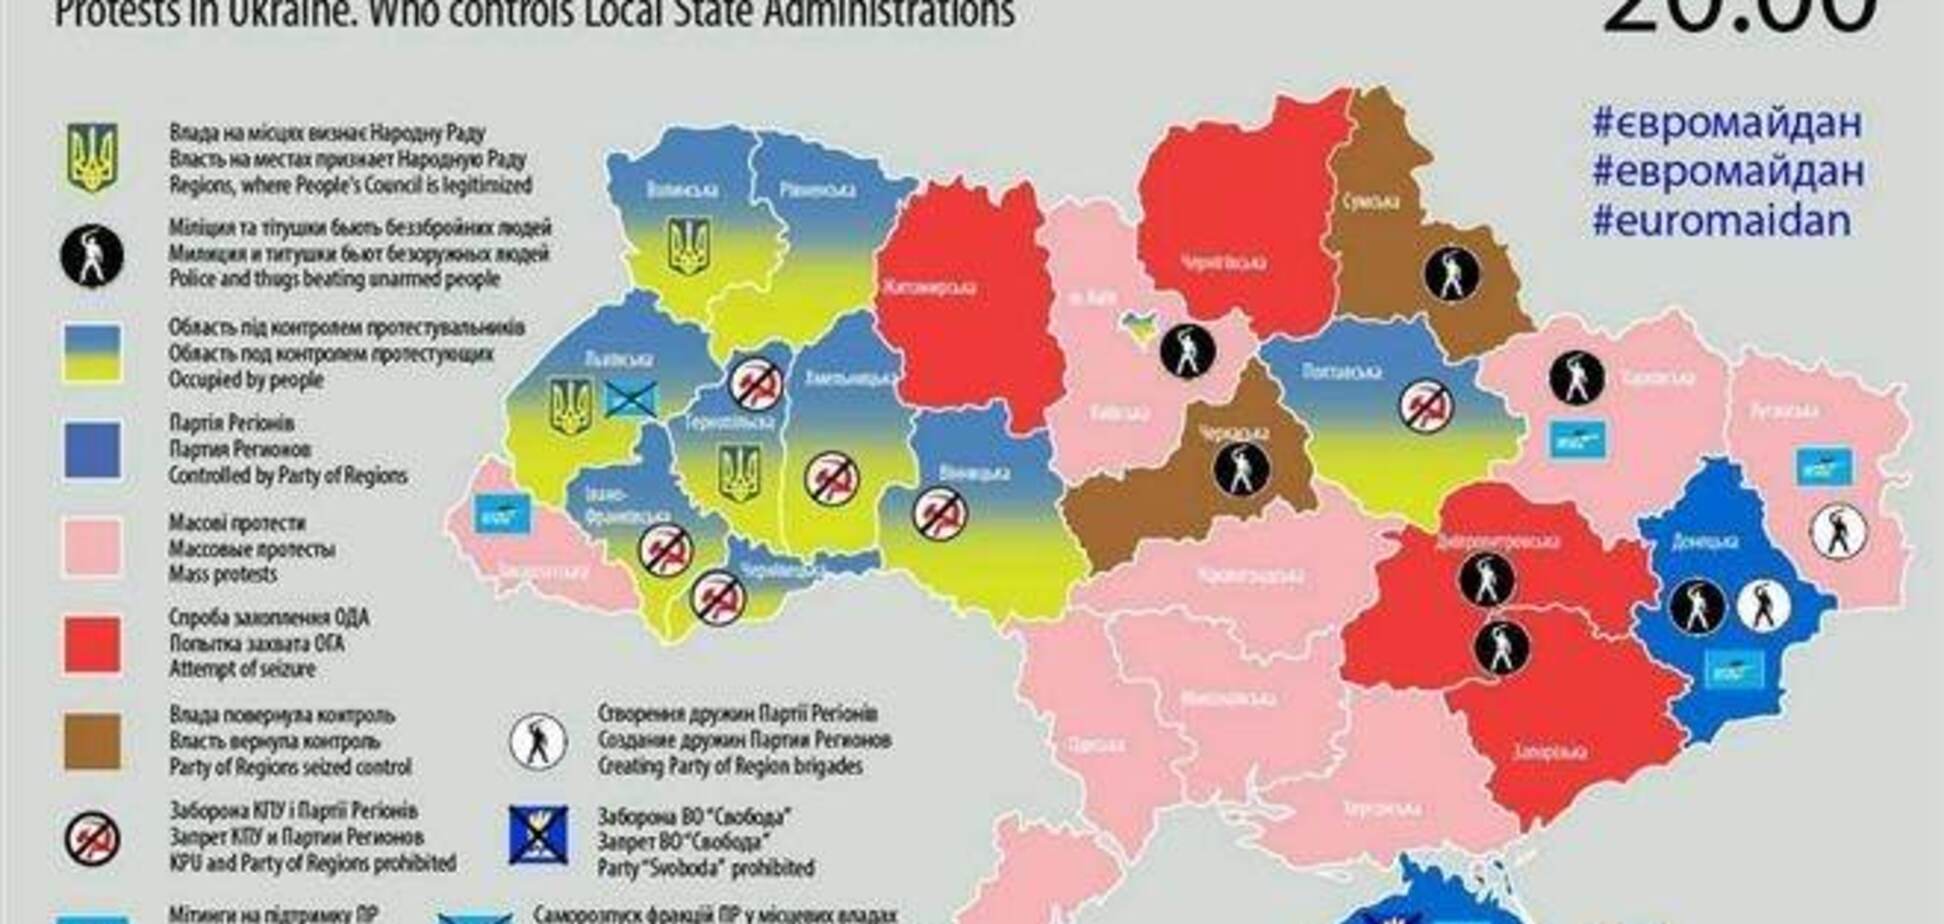 Обновленная карта протестов по Украине: захвачено девять ОГА